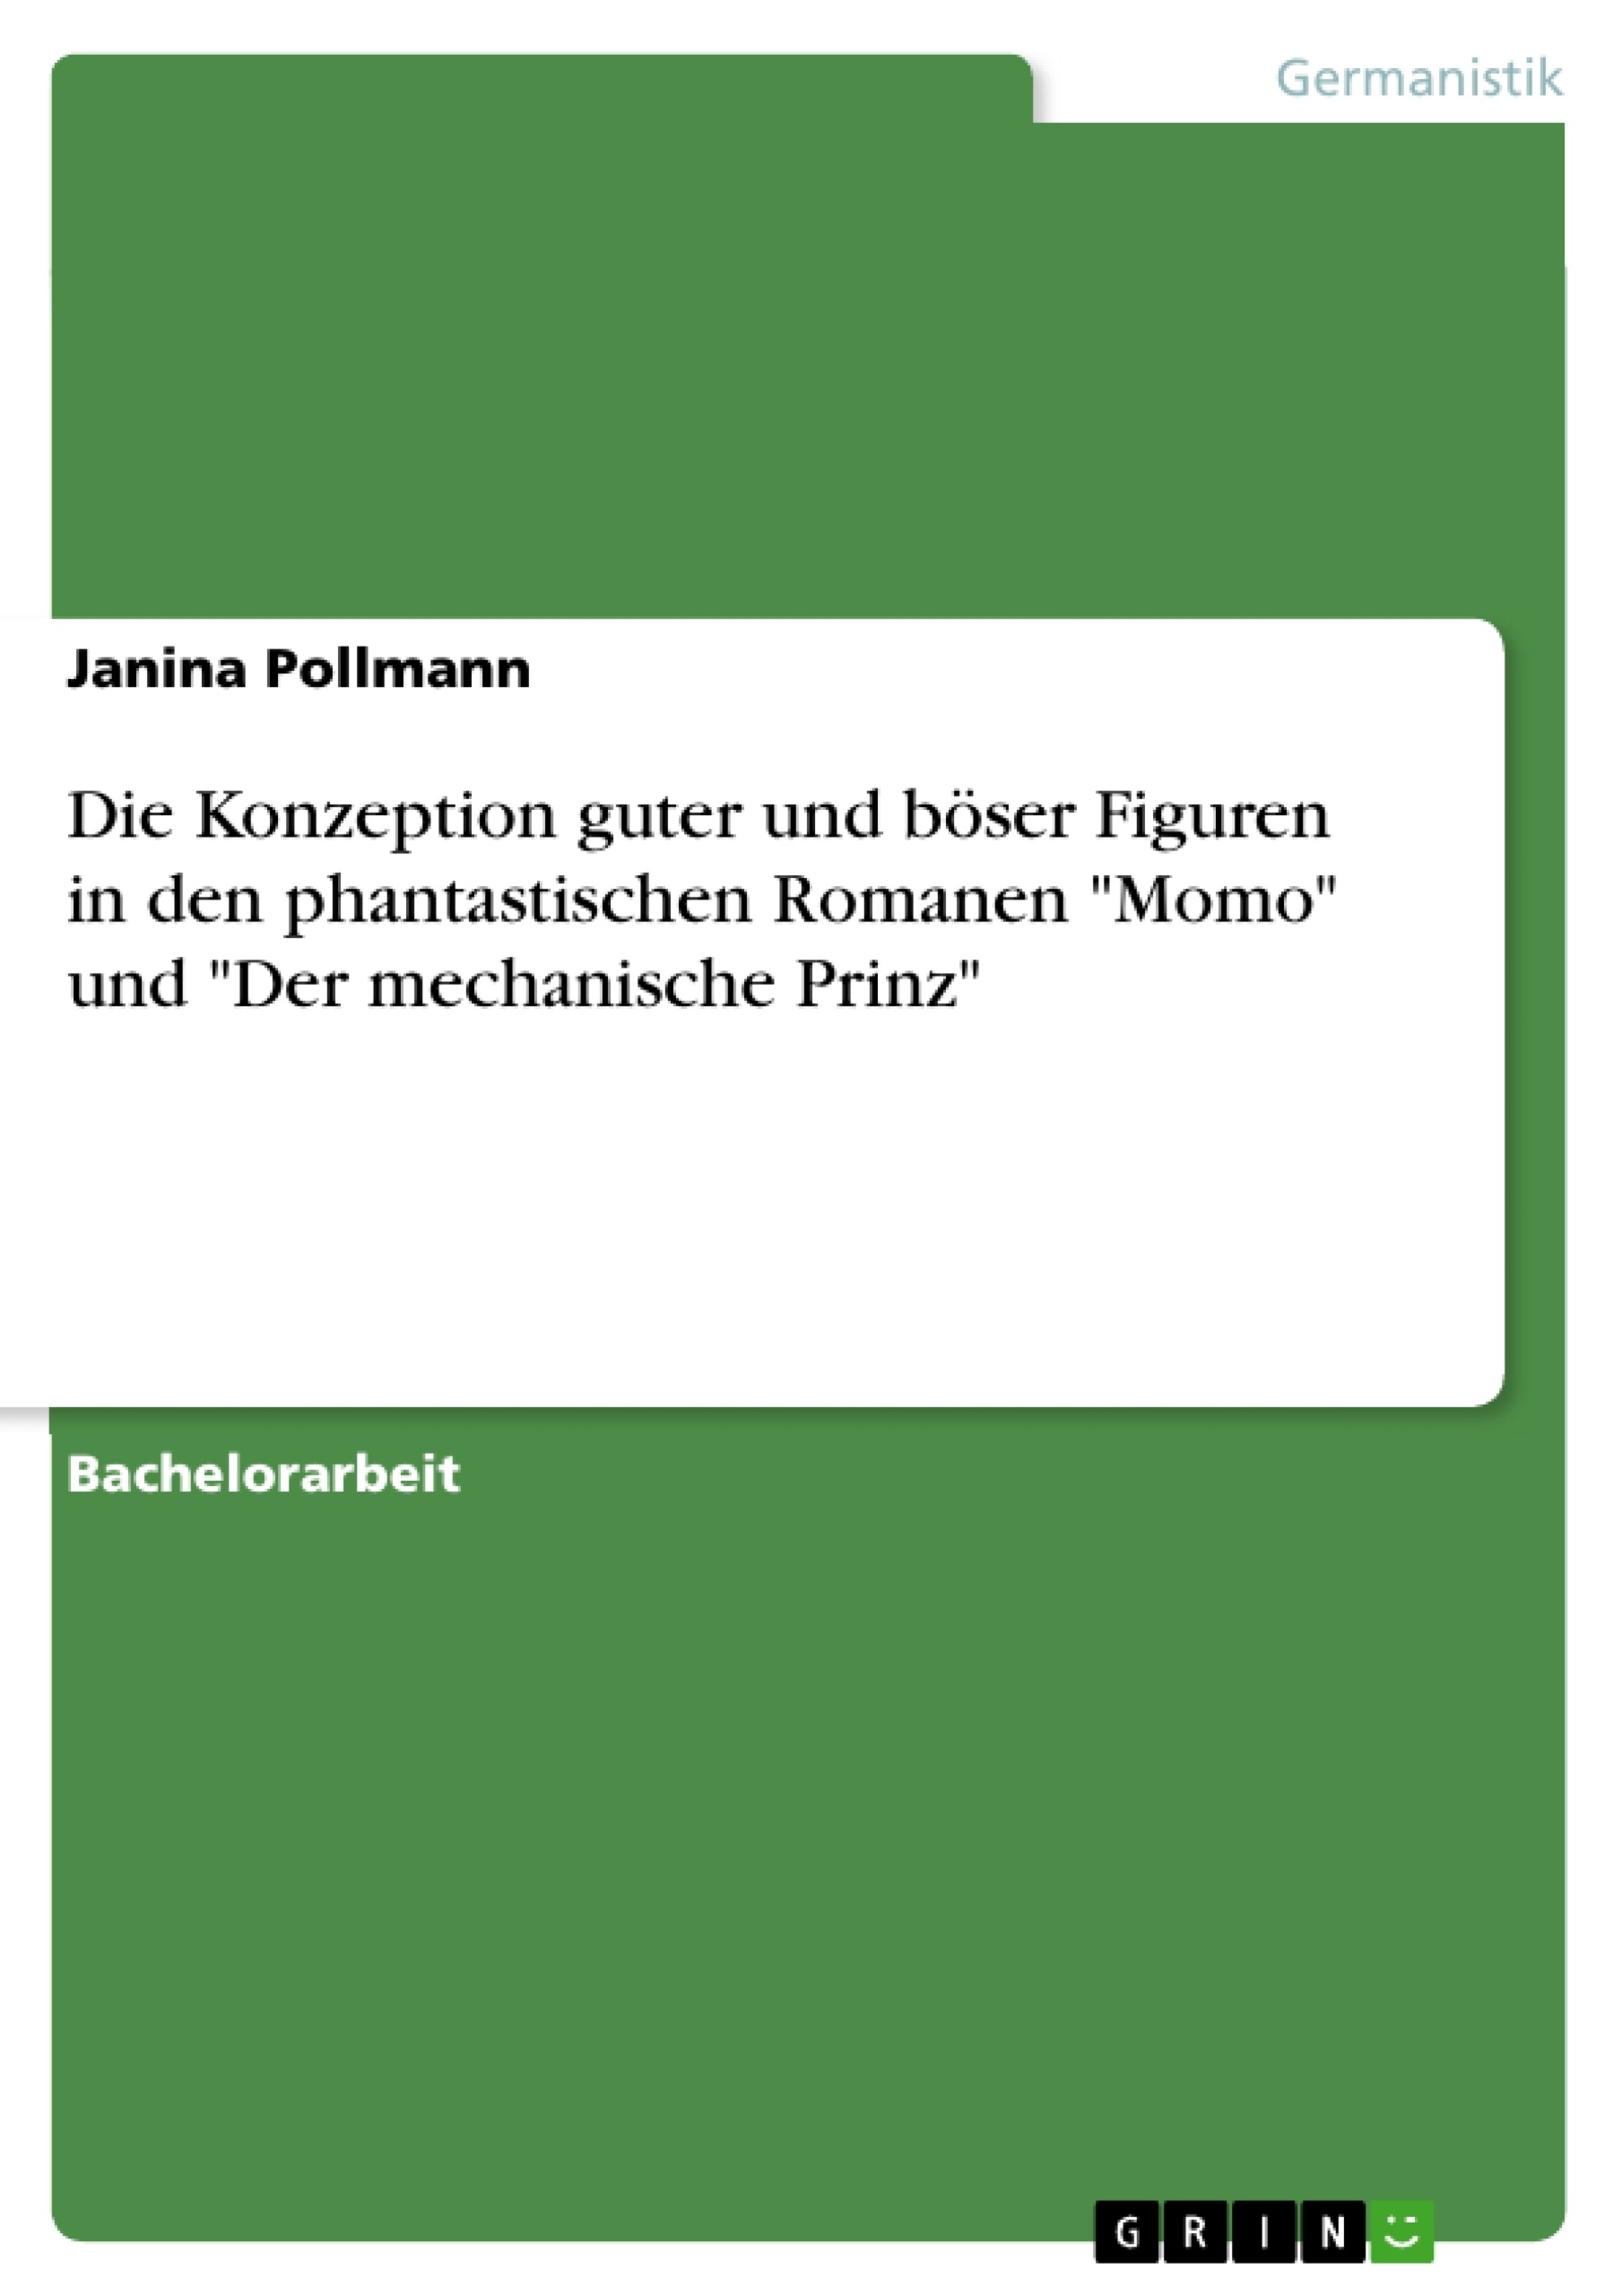 Titre: Die Konzeption guter und böser Figuren in den phantastischen Romanen "Momo" und "Der mechanische Prinz"